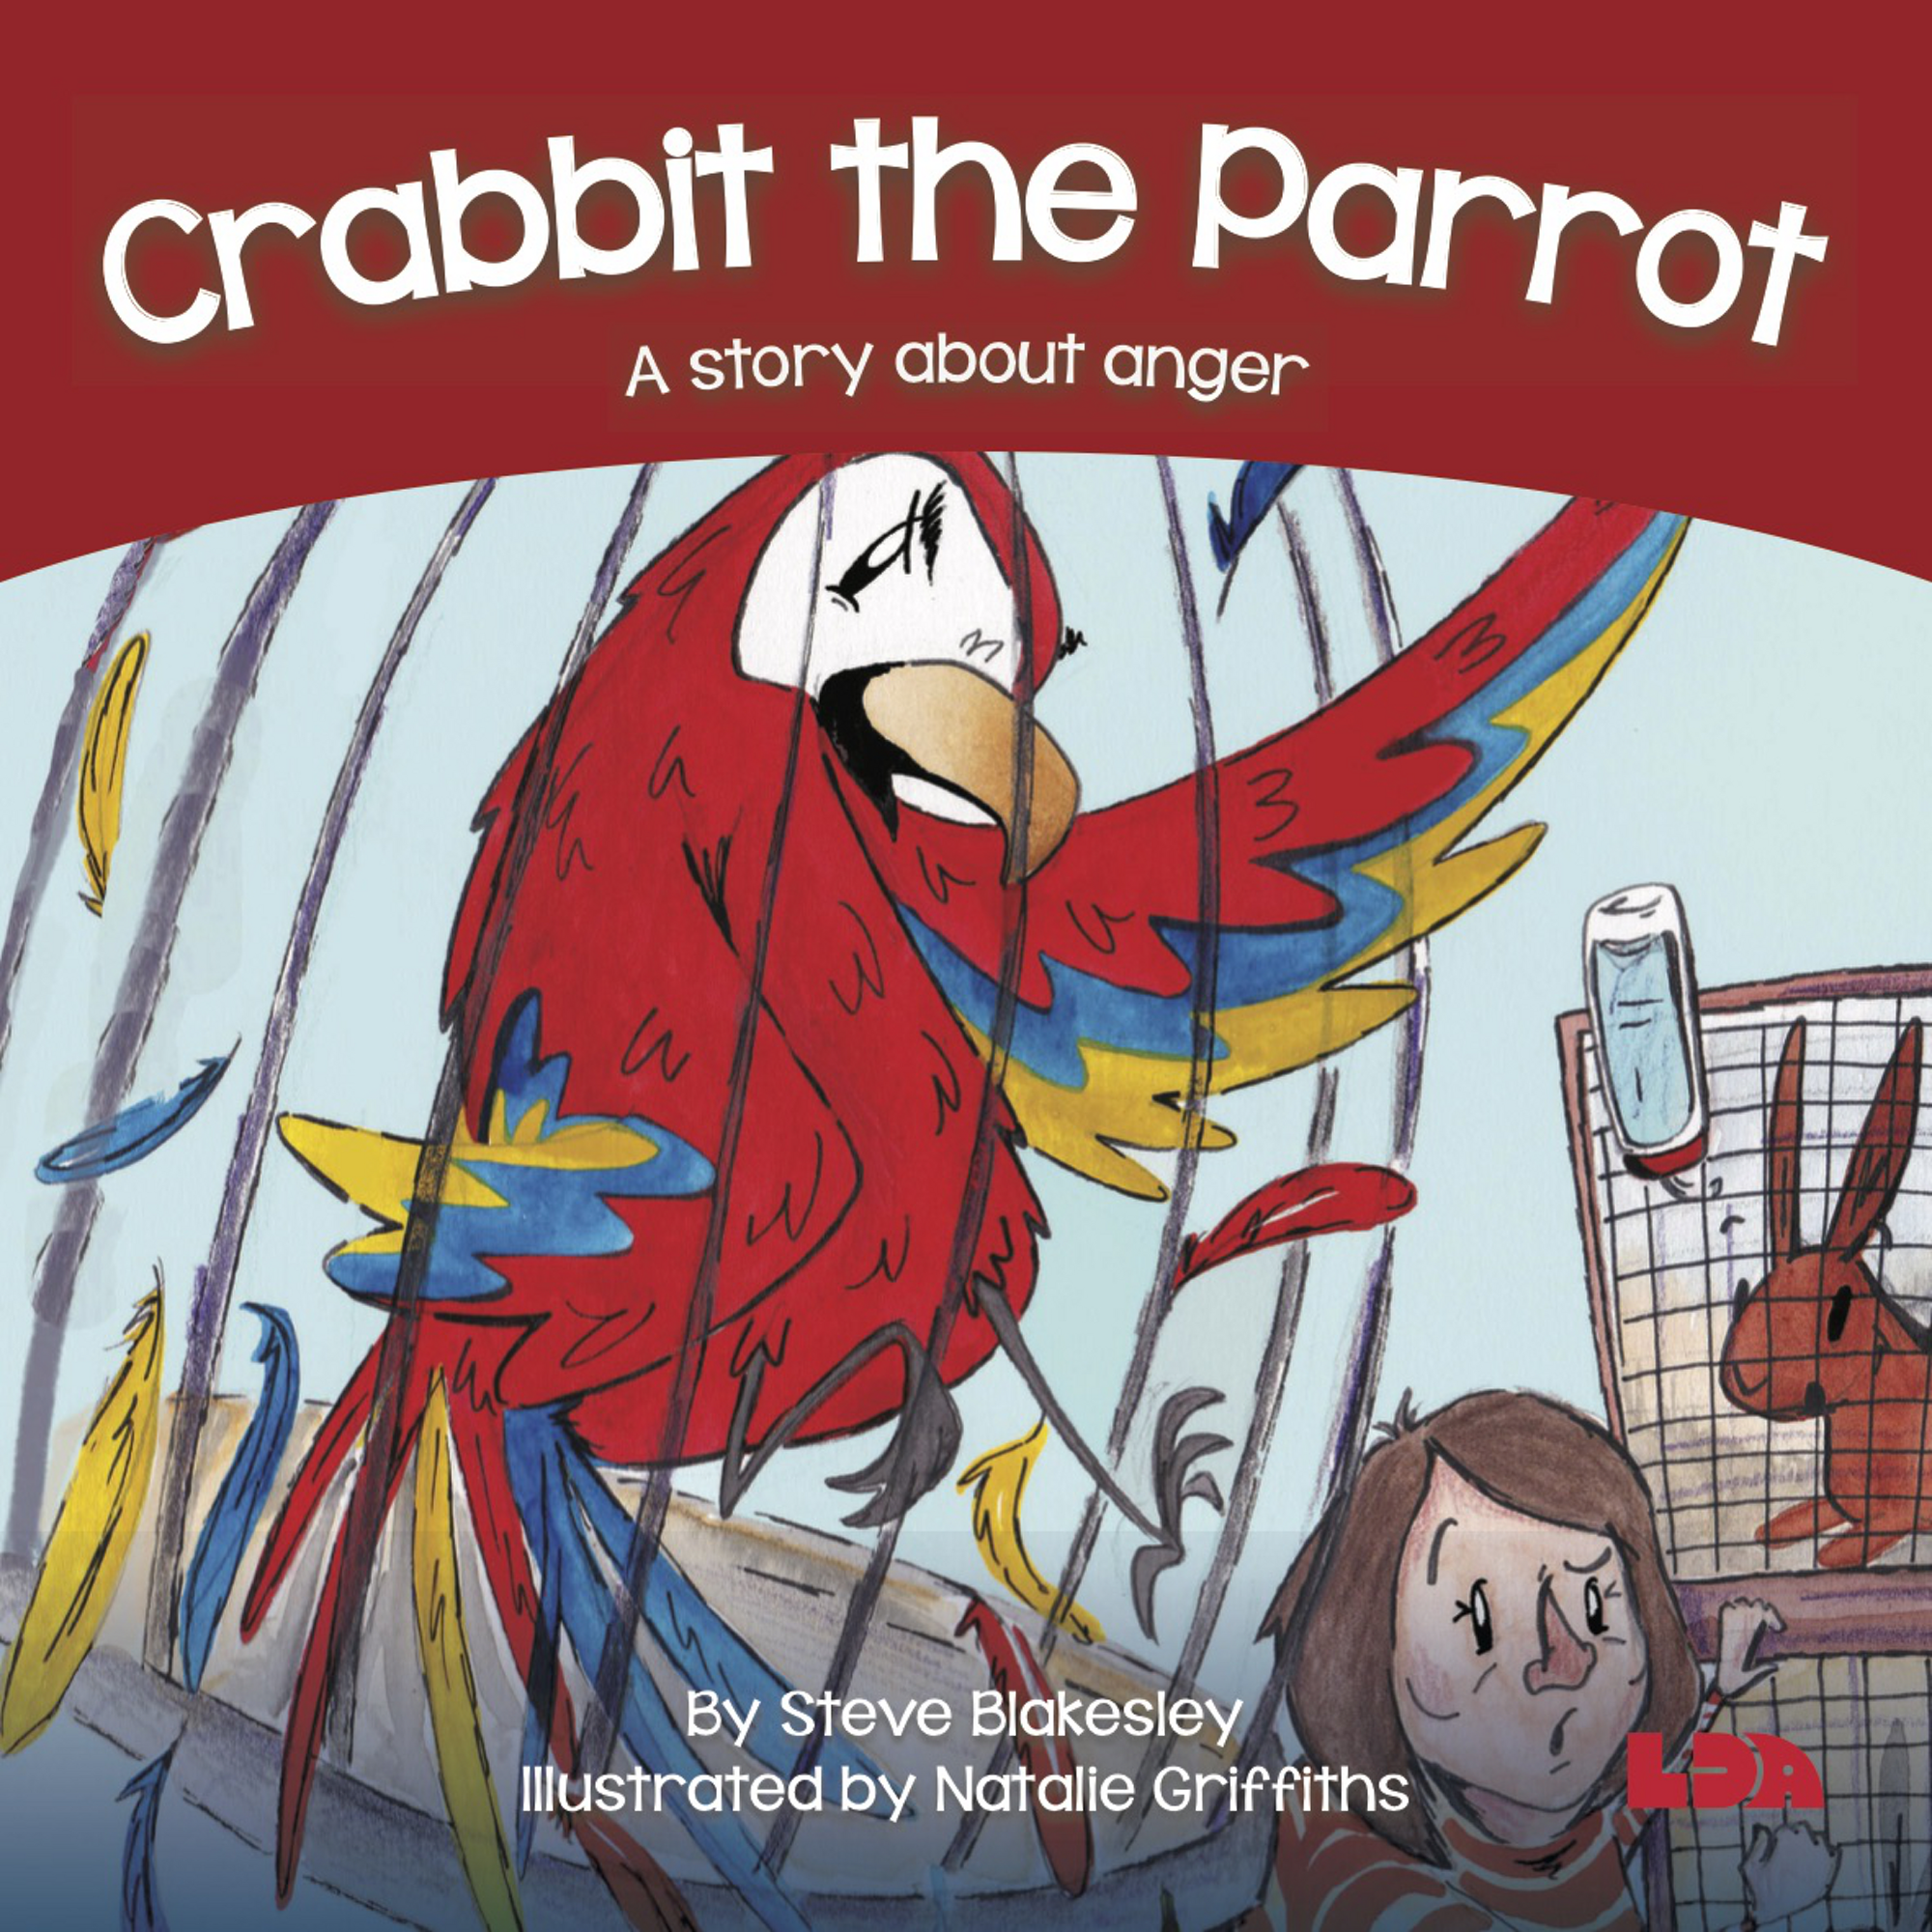 Crabbit The Parrot